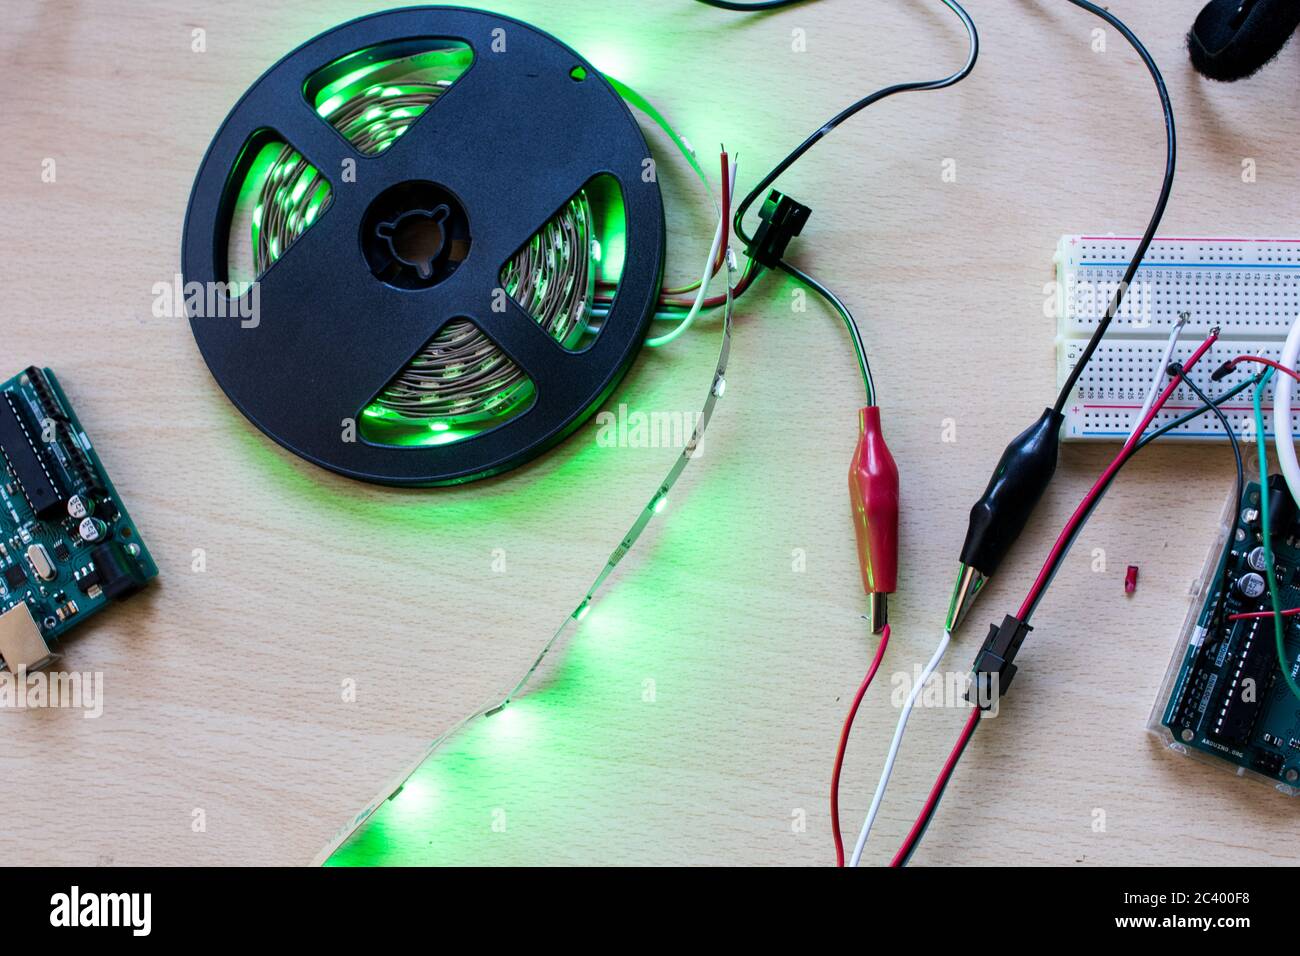 RGB-LED-Streifen adressierbar gesteuert durch einen Mikrocontroller Open Source, um grünen Farbfluss haben. Maker-Projekt für DIY-Umwelt Beleuchtung. Leuchten für Stockfoto